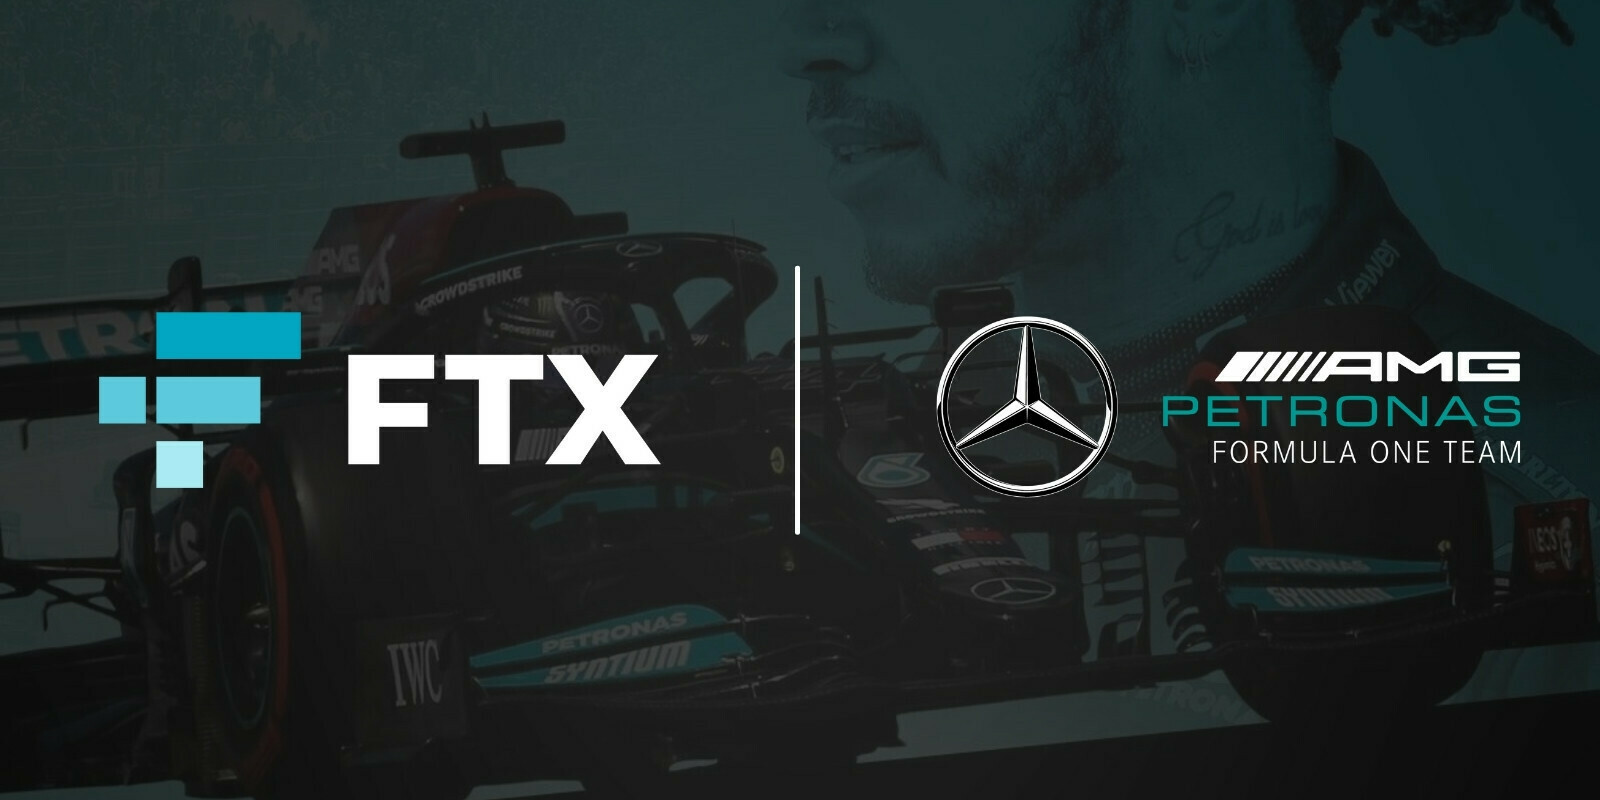 FTX signe un nouveau contrat de sponsoring avec l'écurie de F1 Mercedes-AMG Petronas